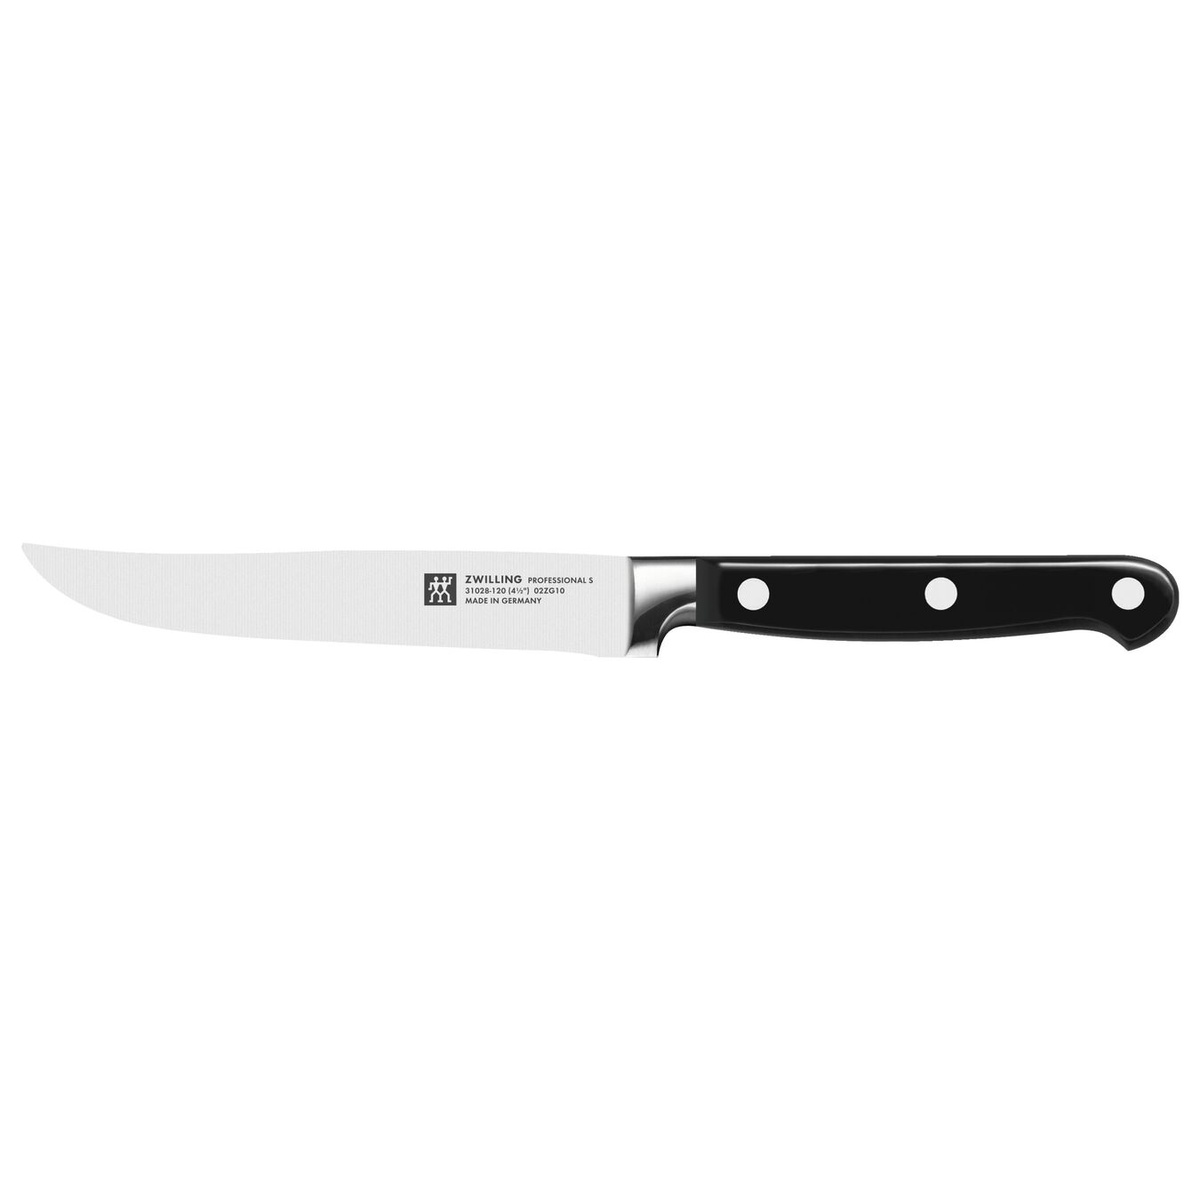 Нож для стейка 12 см Zwilling Zwilling Professional S фото